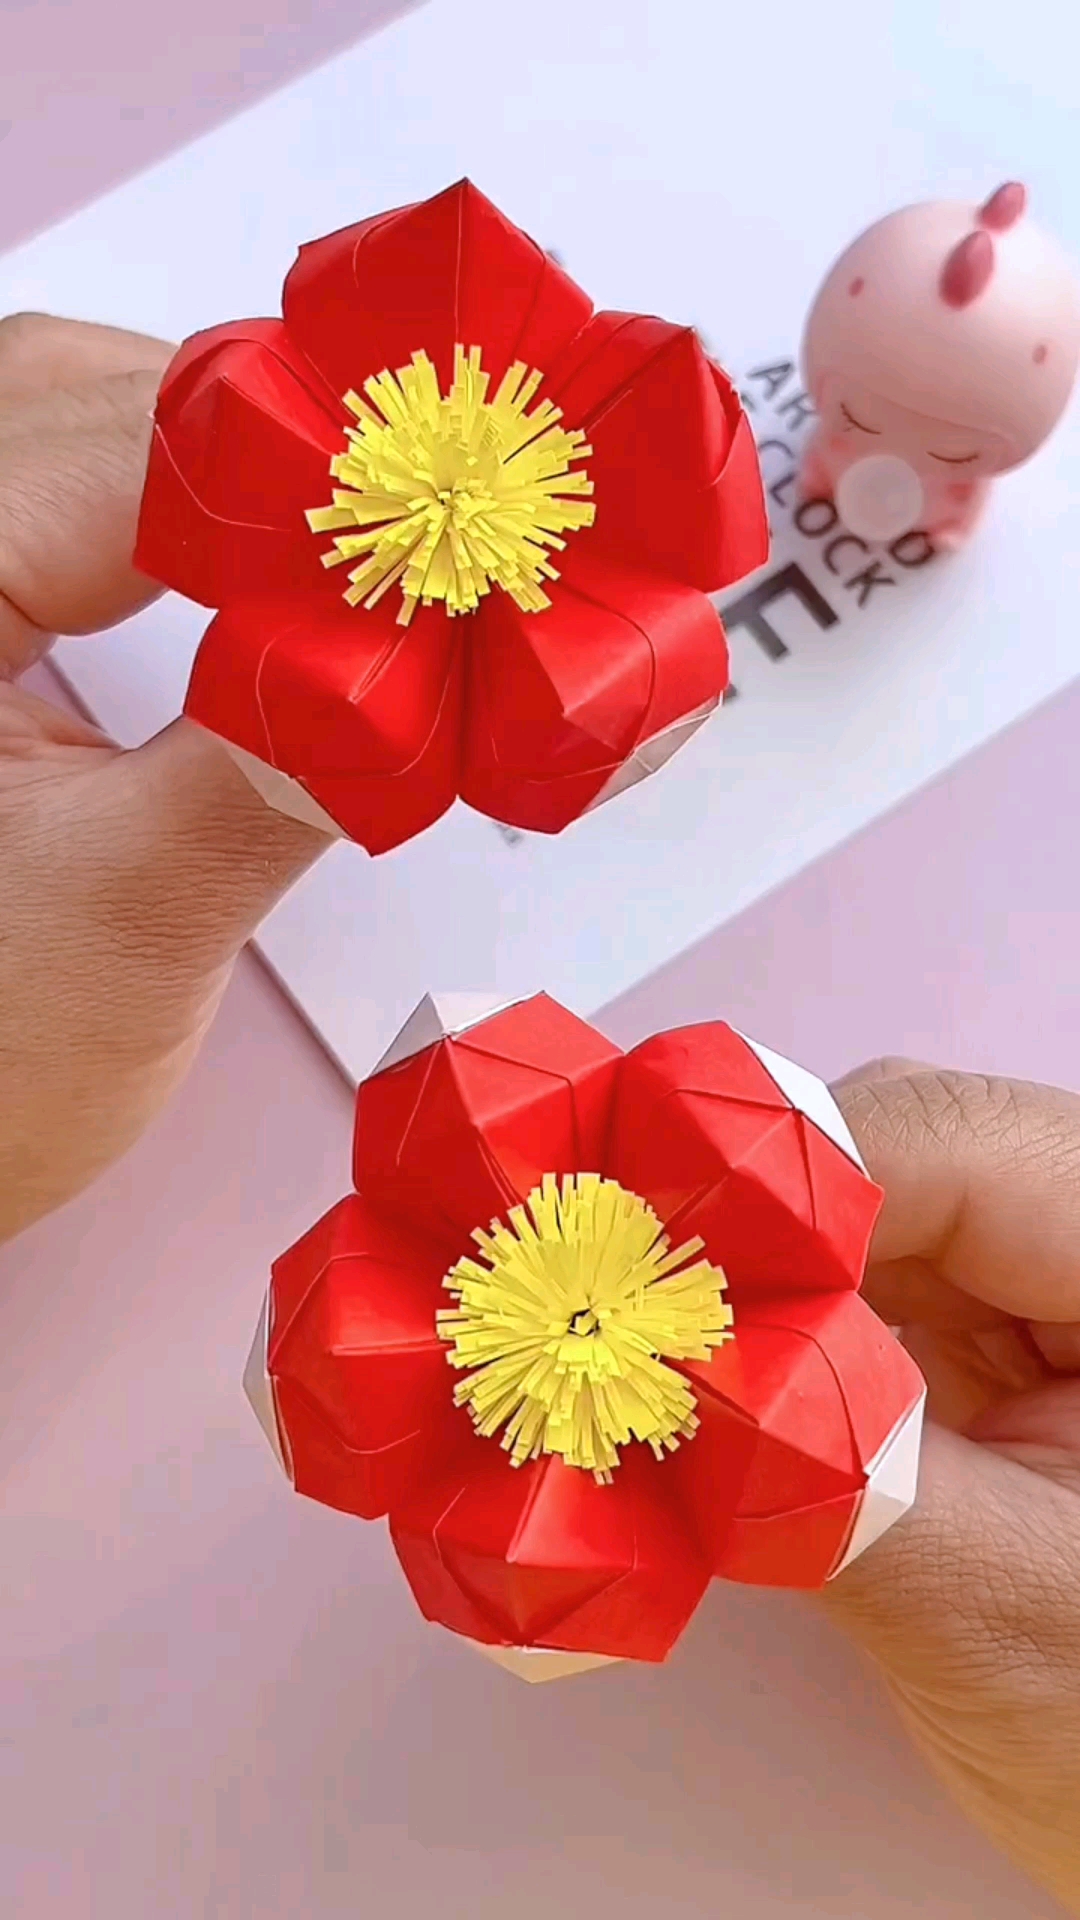 卡纸制作小红花教程图片